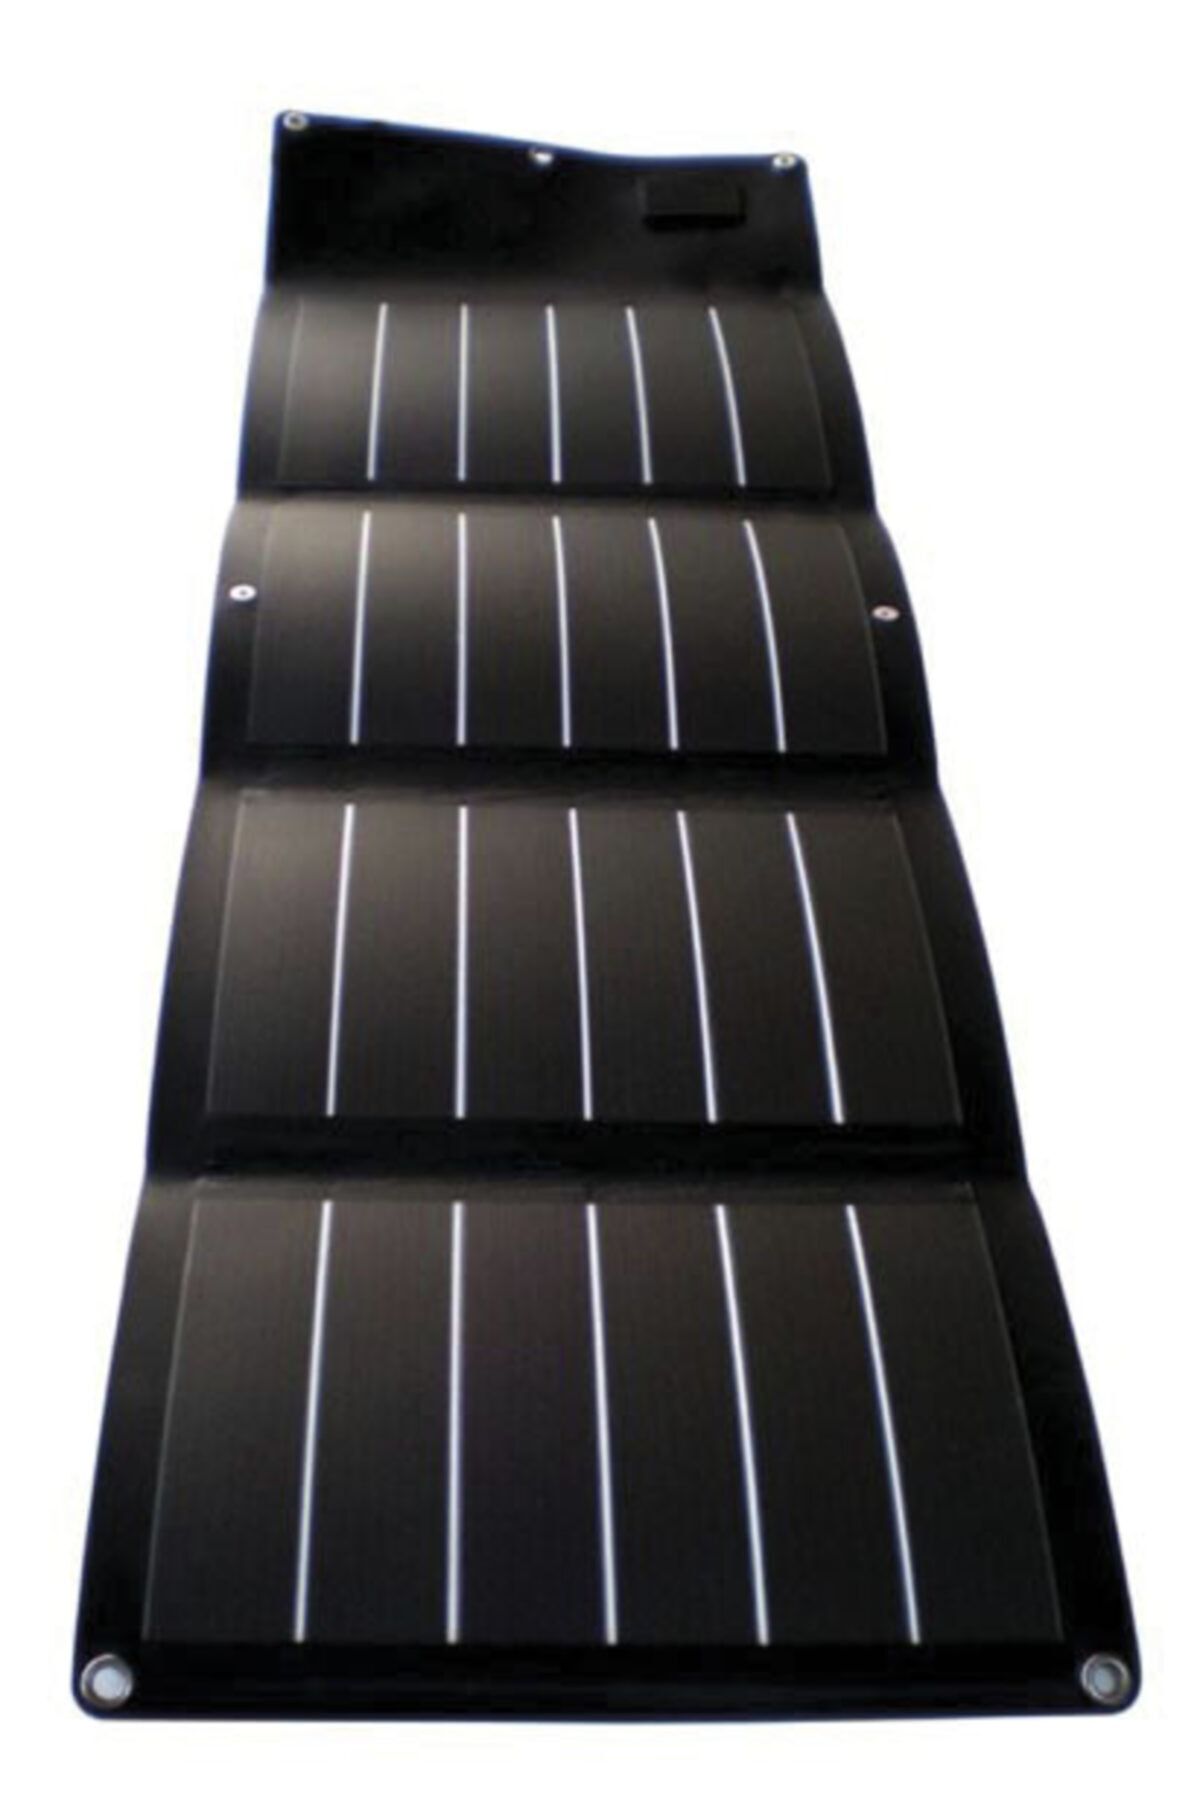 TRANSMER Taşınabilir / Katlanabilir Güneş Enerji Paneli 12w -18w -660a